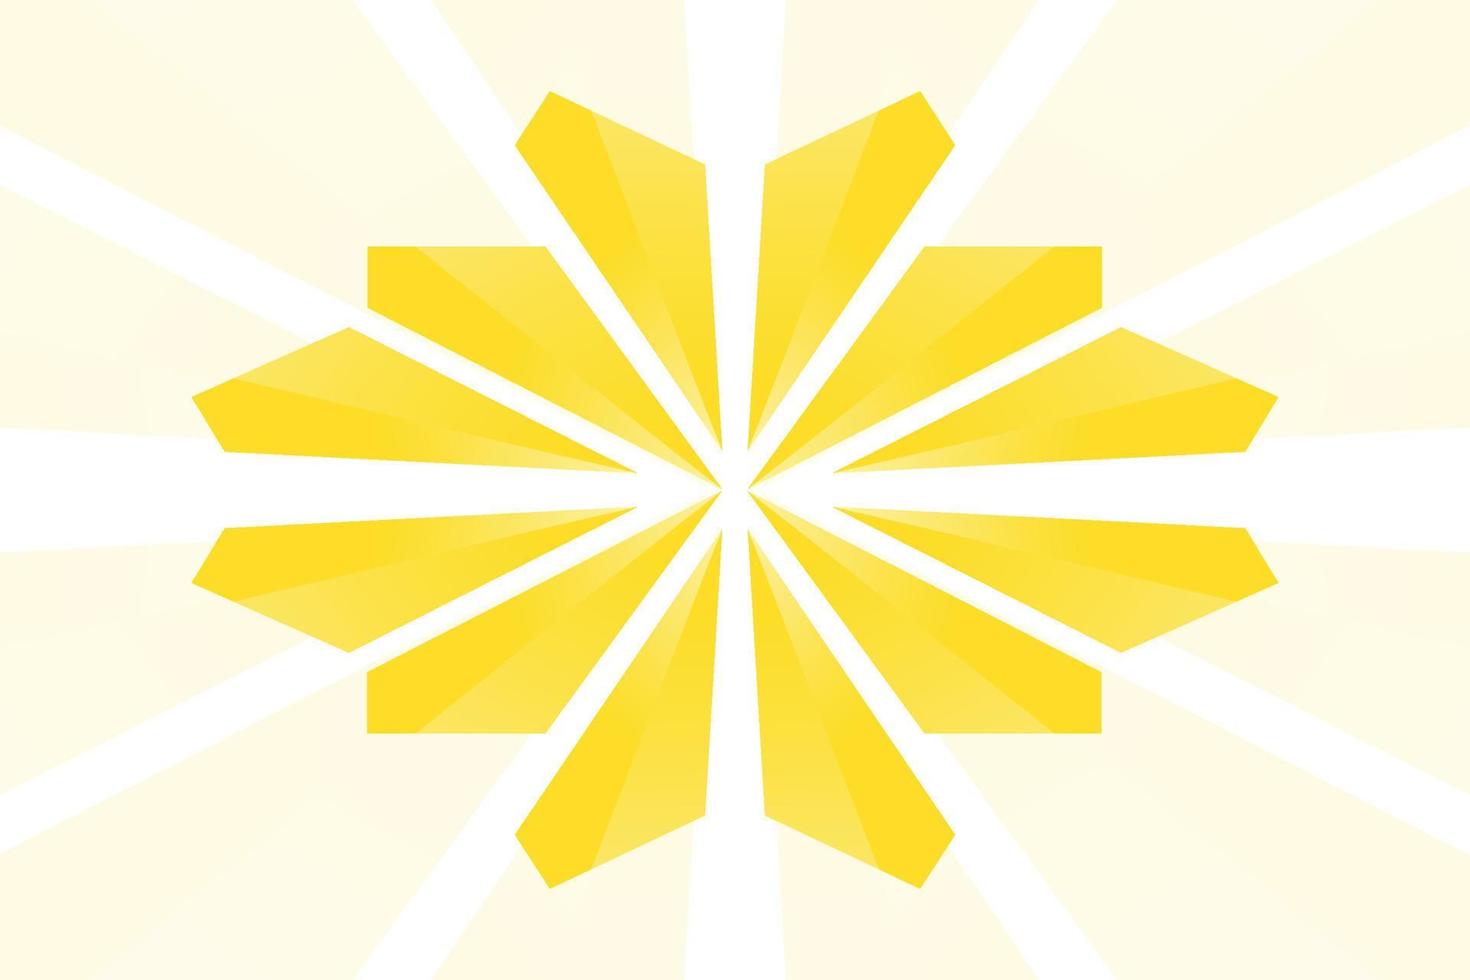 abstracte gele achtergrond vector